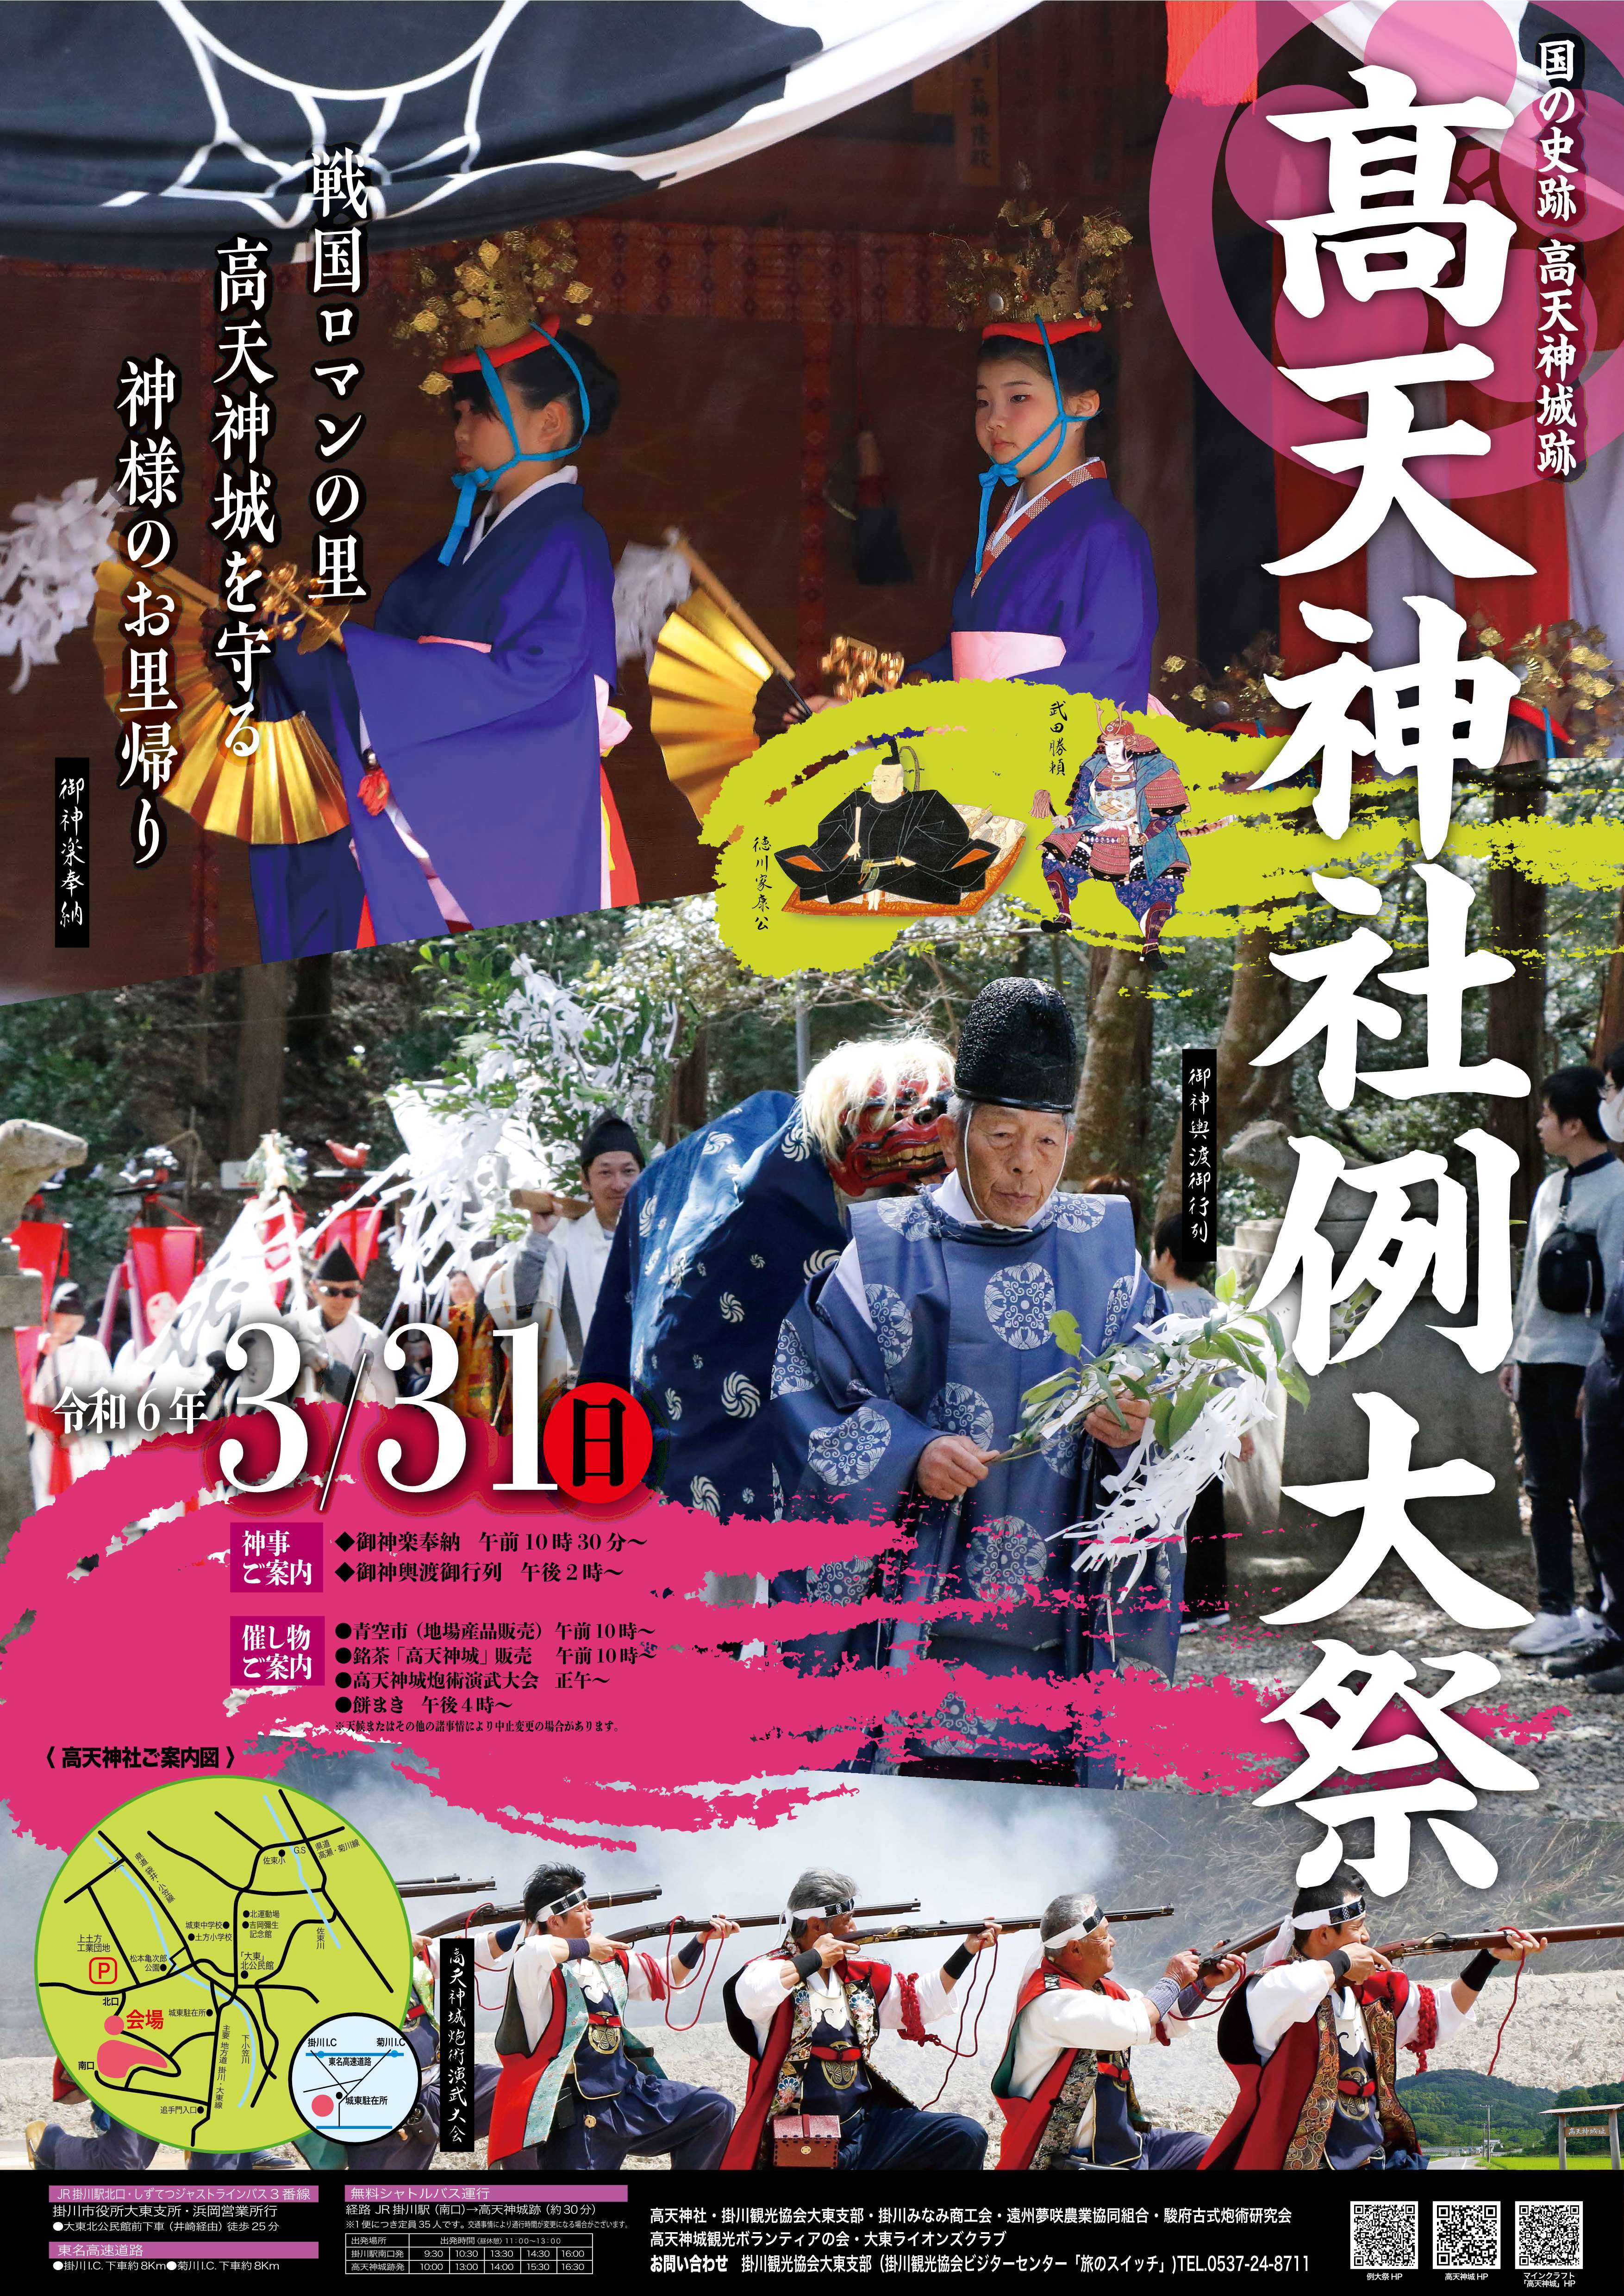 (最終)240213_takatenjin_poster_01 (JPG 1.55MB)